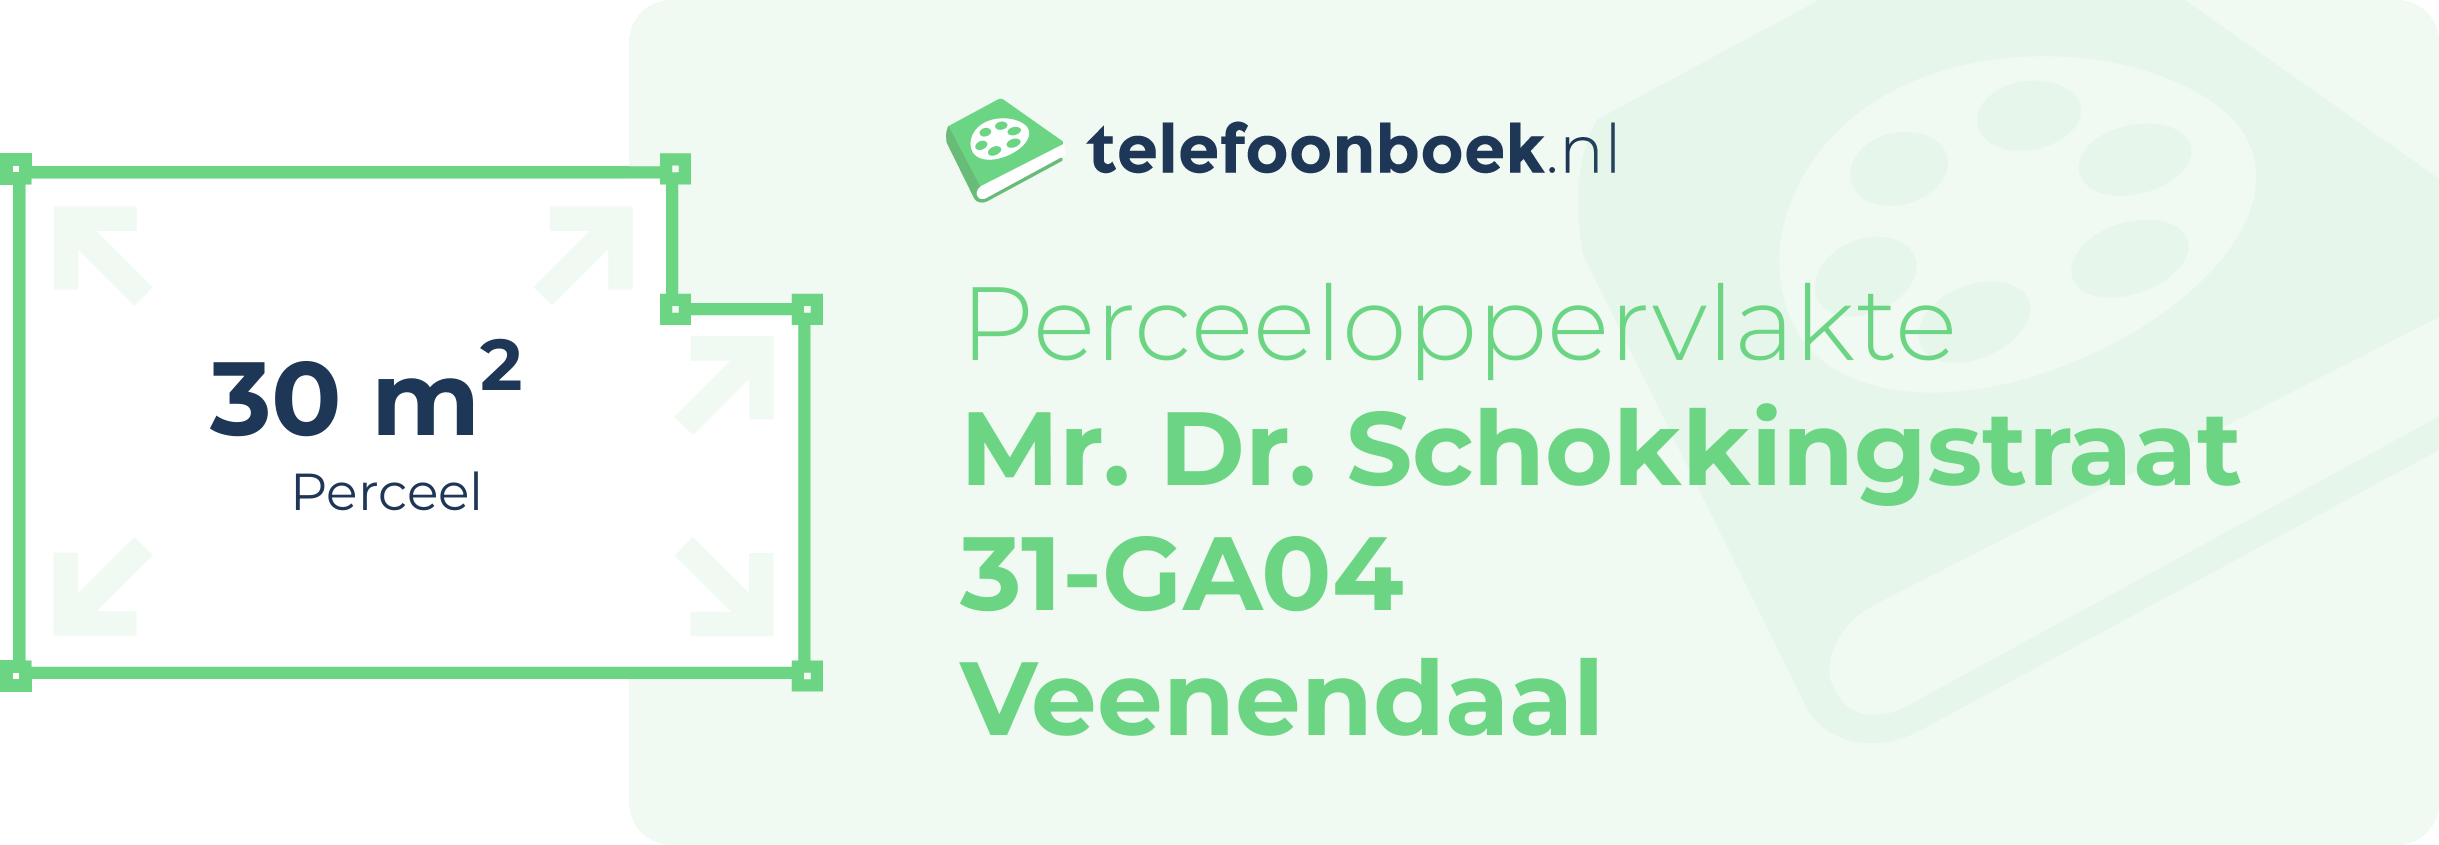 Perceeloppervlakte Mr. Dr. Schokkingstraat 31-GA04 Veenendaal